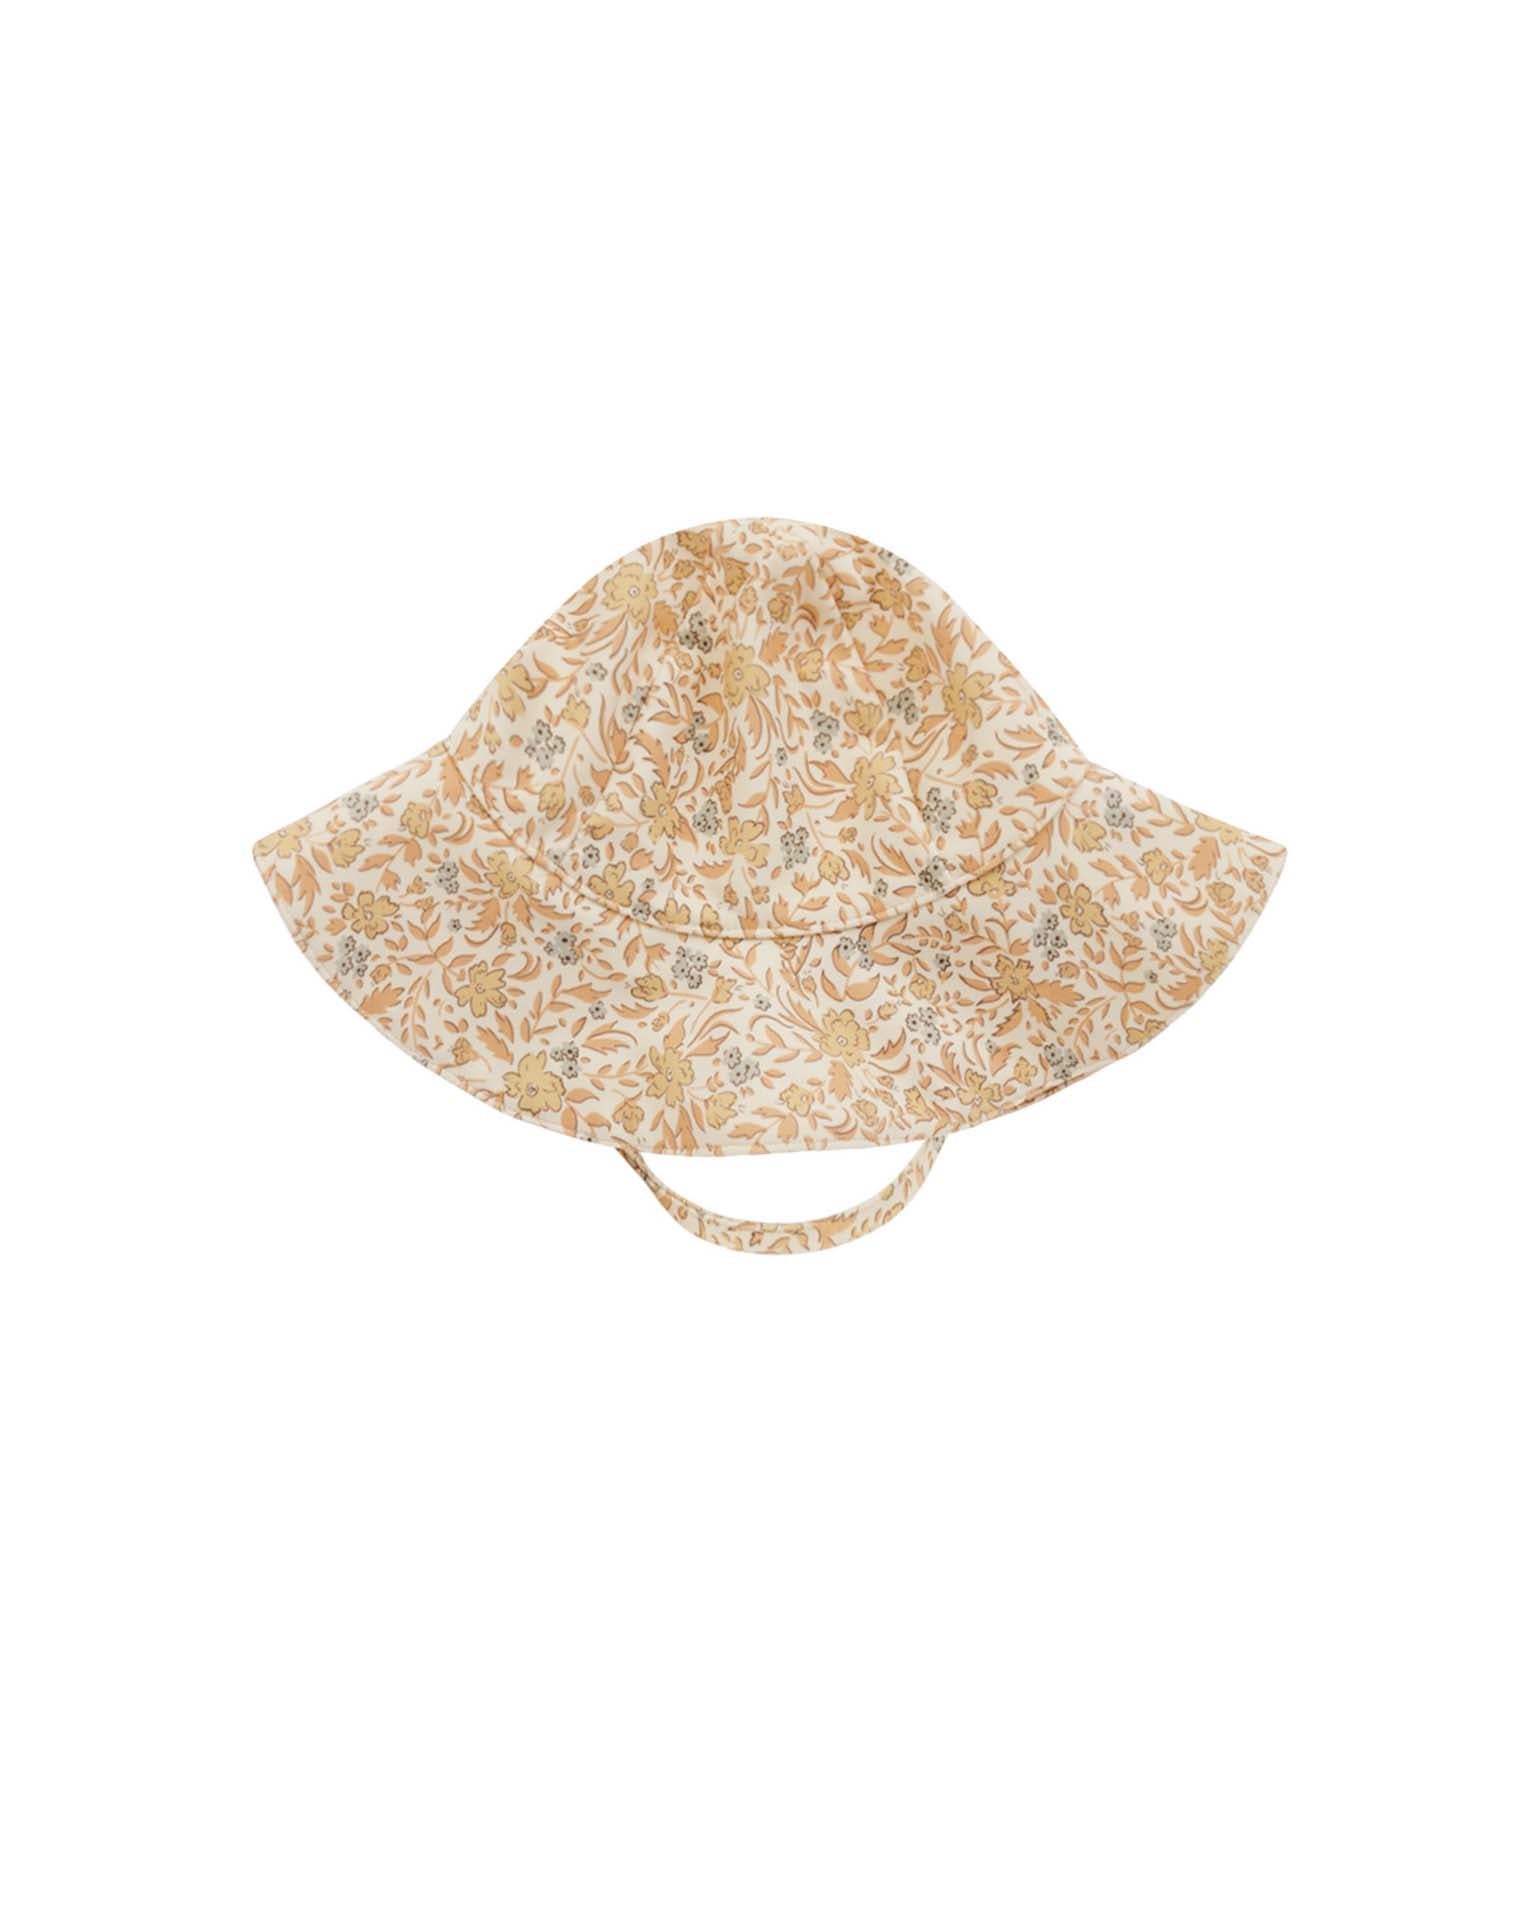 Little rylee + cru accessories floppy swim hat in blossom